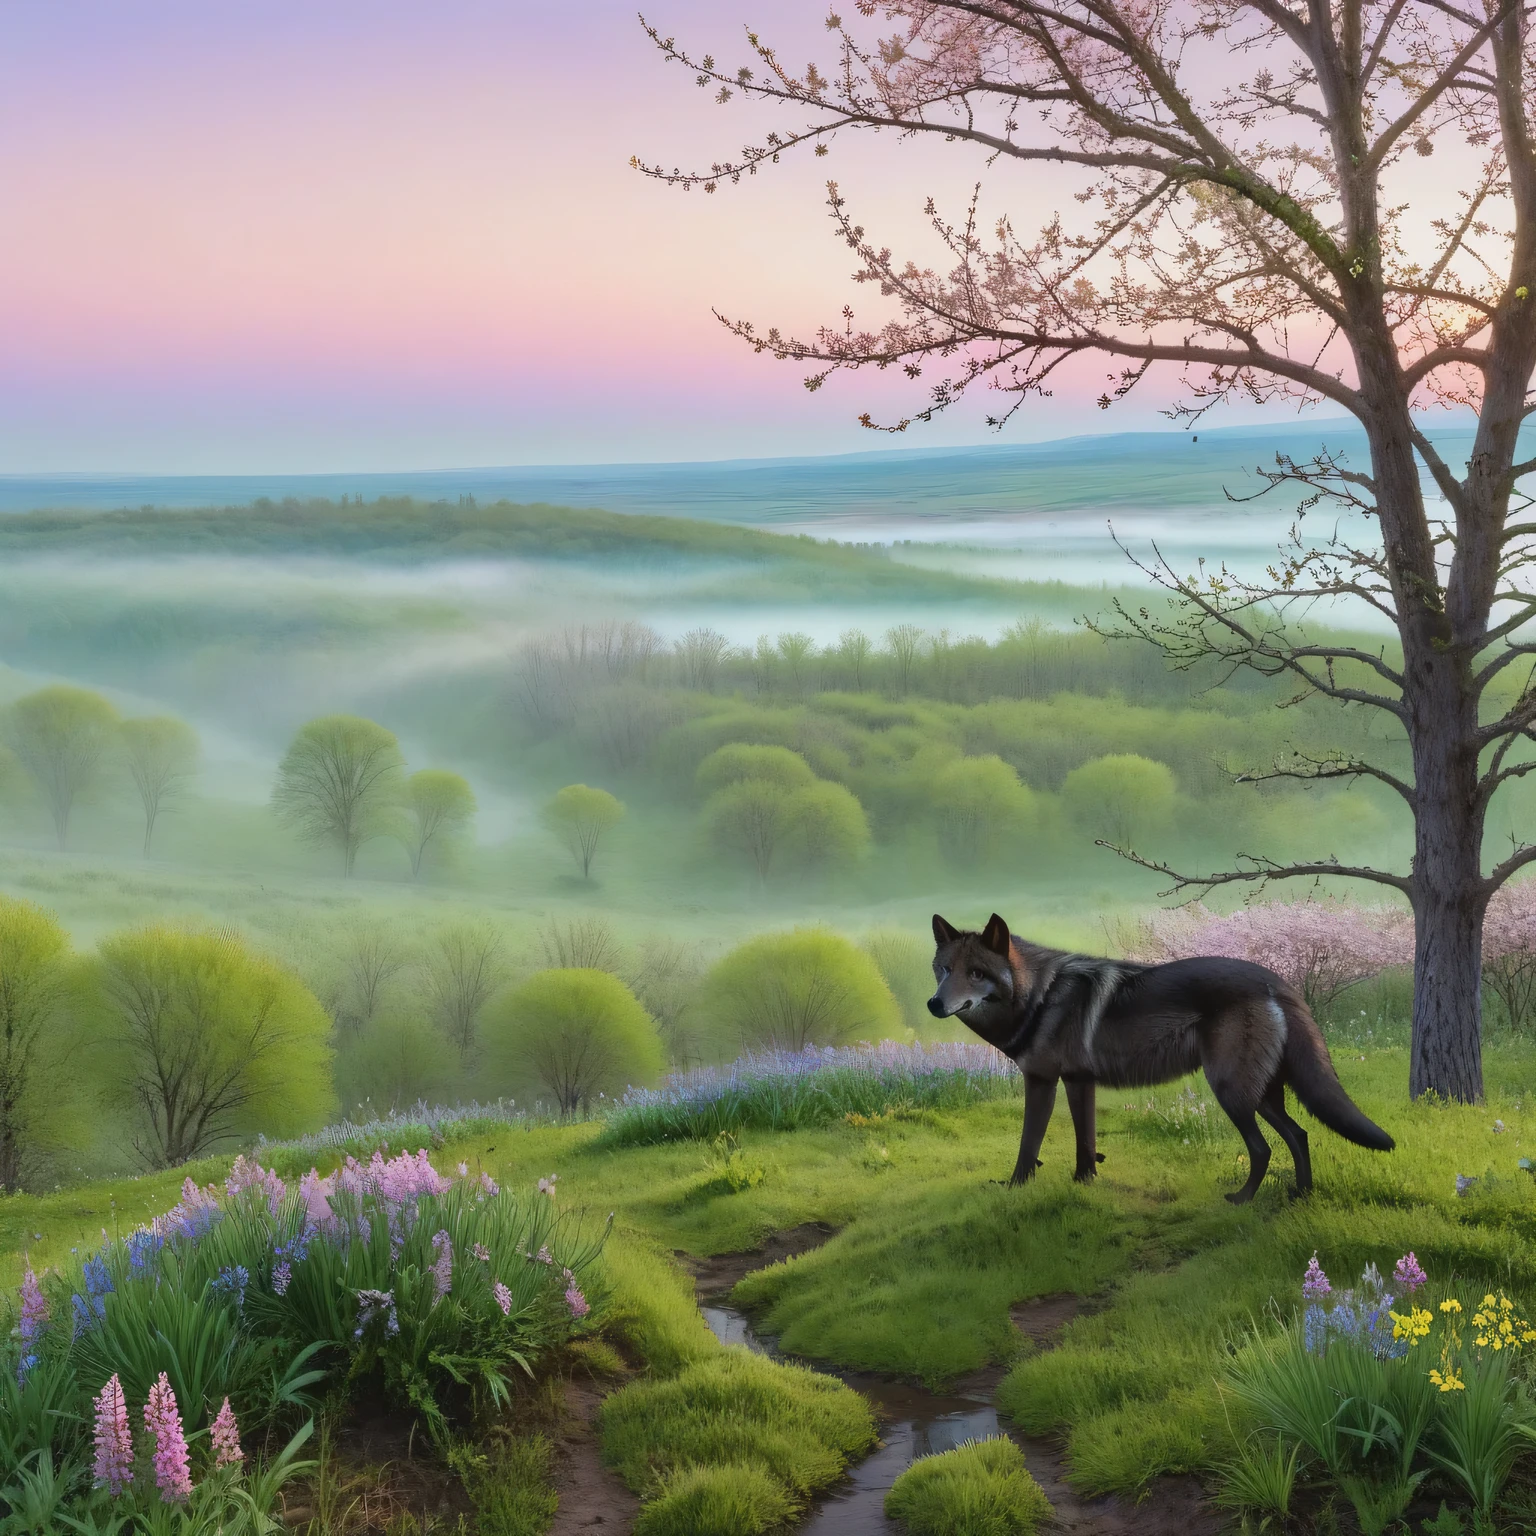 (light เช้า fog in the distance):1.2335, (โยน:1.4), มุมมองบุคคลที่หนึ่งจากหน้าผาสูง, หมาป่าสีเทาดำตัวใหญ่มองลงมา, ทุ่งหญ้าในฤดูใบไม้ผลิที่มีดอกไม้ผลิดอกแรกและหญ้าอ่อนสีเขียวทอดยาวอยู่ตรงหน้าเขา, แมลงฤดูใบไม้ผลิตัวแรกบินวนอยู่เหนือดอกไม้, ต้นไม้และพุ่มไม้เติบโตตามขอบโล่ง, ดอกไม้ฤดูใบไม้ผลิบนต้นไม้, ดอกตูมสีเขียวพองตัวอยู่ในพุ่มไม้, เวสต้าต้น, เช้า, พระอาทิตย์เพิ่งเริ่มโผล่พ้นขอบฟ้าอันไกลโพ้น, แต่งแต้มท้องฟ้าให้เป็นสีชมพู, เช้าฤดูใบไม้ผลิ, Beautiful เช้าฤดูใบไม้ผลิ, palette of early spring เช้า, (ผลงานชิ้นเอก:1.305), (ความละเอียดสูง:1.305), 32ก, (ศิลปะดิจิทัล:1.1), ปรับพื้นผิวให้เรียบ